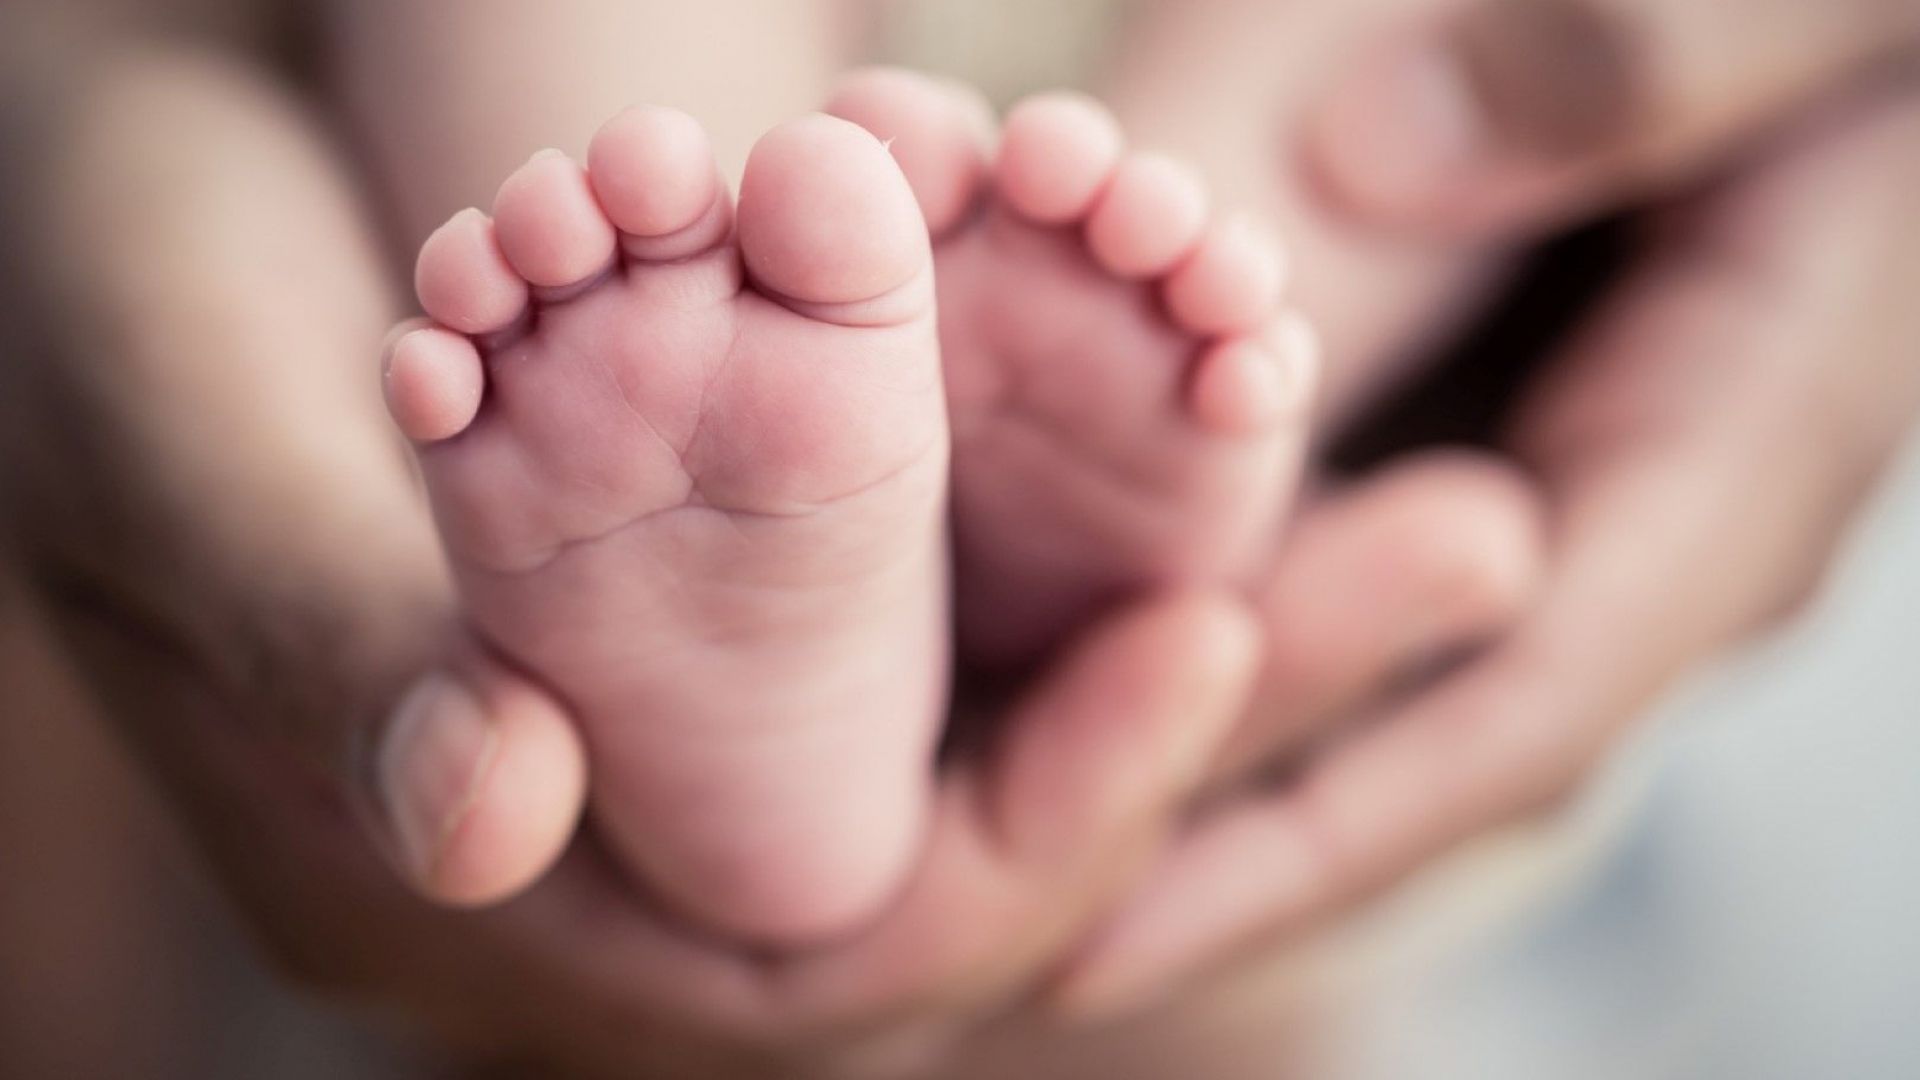  14 новородени бебета починали през 2019-а в Русе